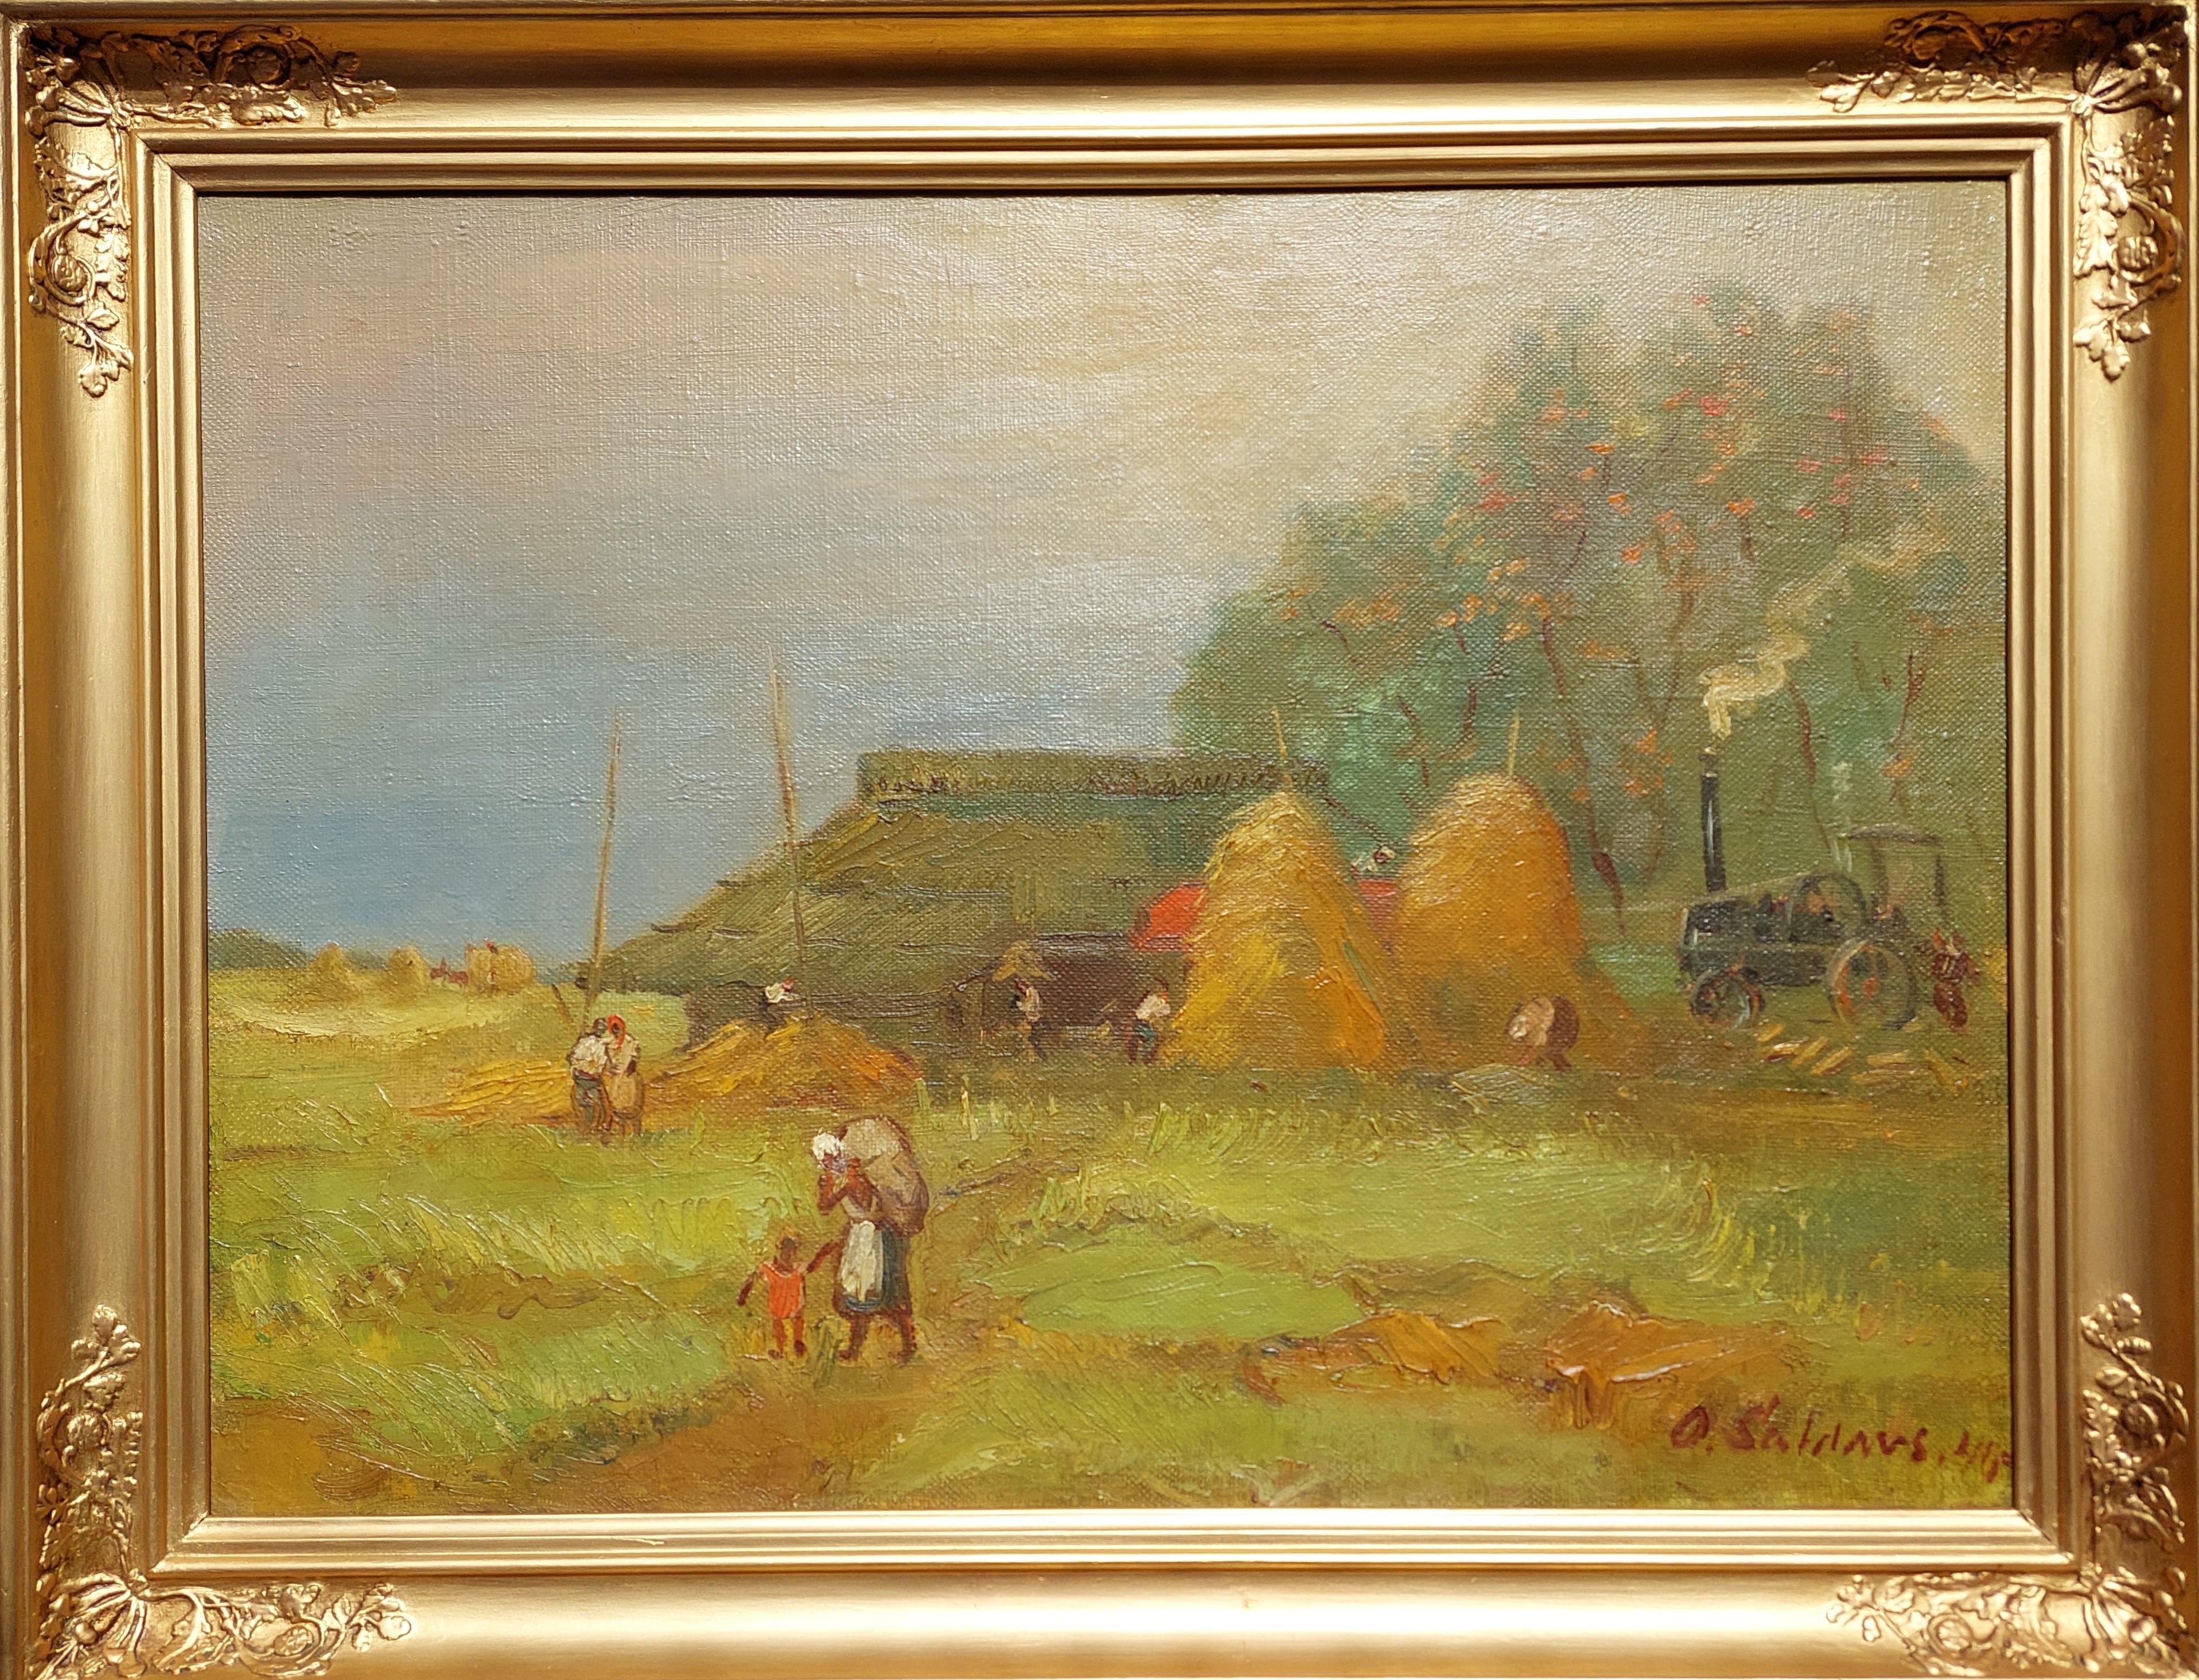 Battage 1940. Toile, huile. 54.5x73,5 cm

Scène peinte par l'artiste de la vie quotidienne des gens de la campagne dans une atmosphère de travail - battage et fenaison. On a capturé deux meules de foin, un tracteur, une grange et des personnes en